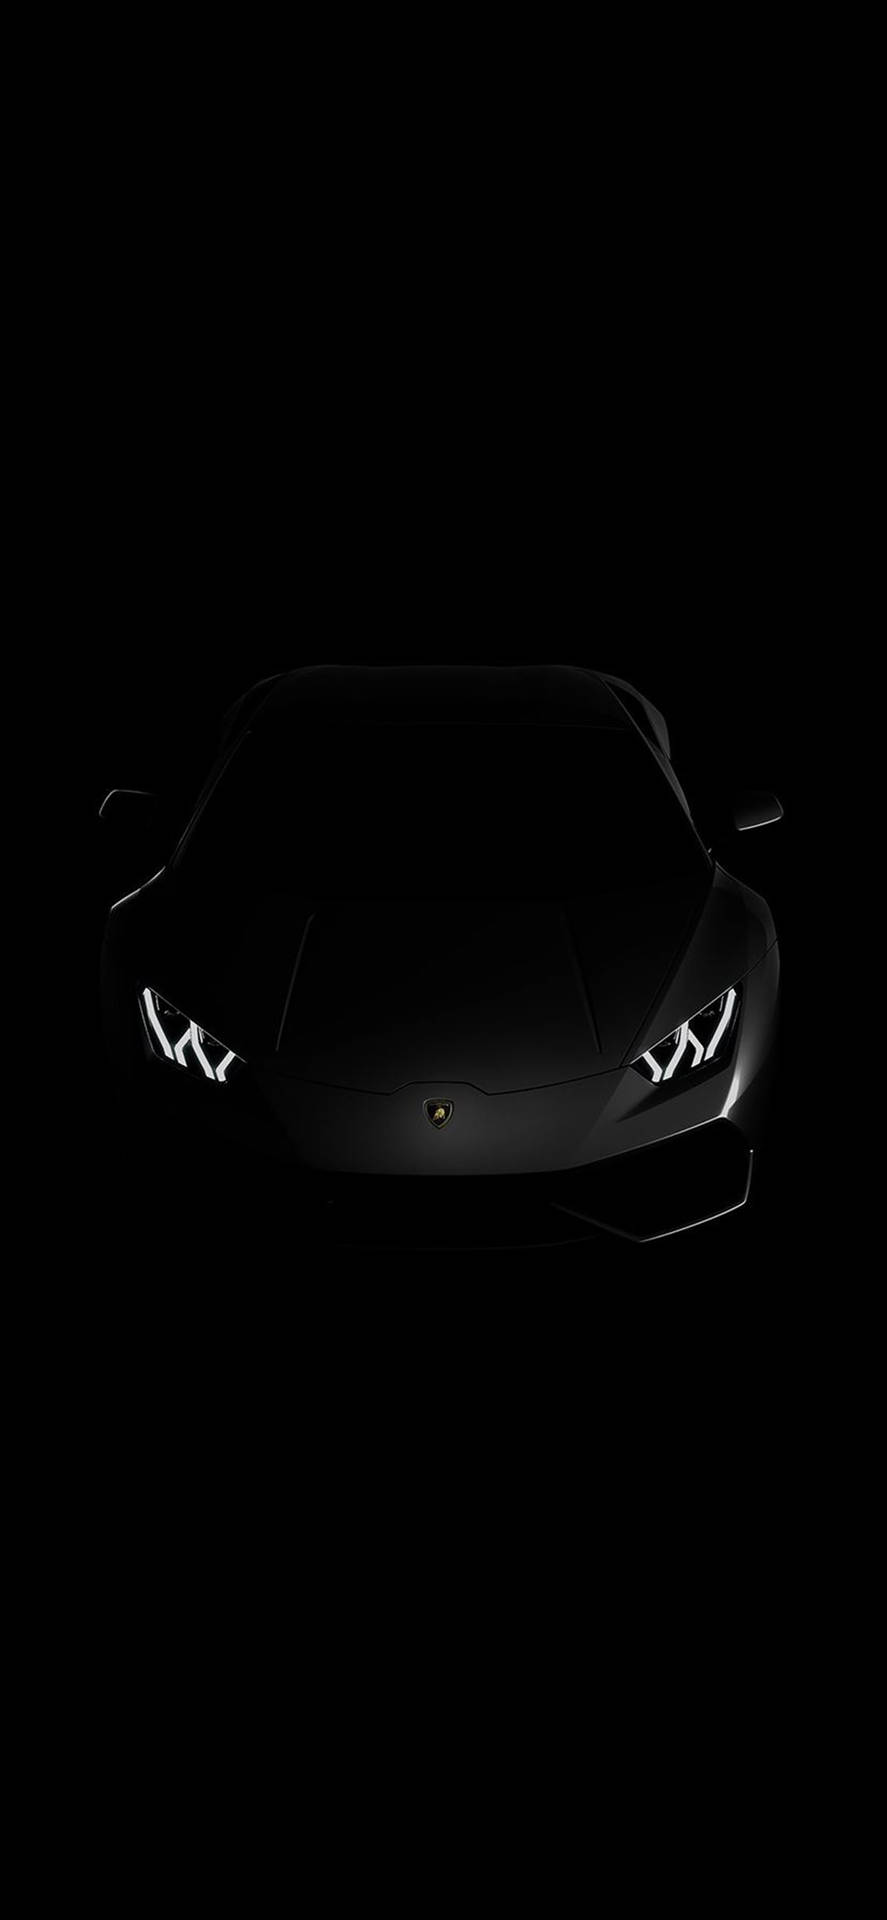 iPhone X Car Black Lamborghini Wallpaper